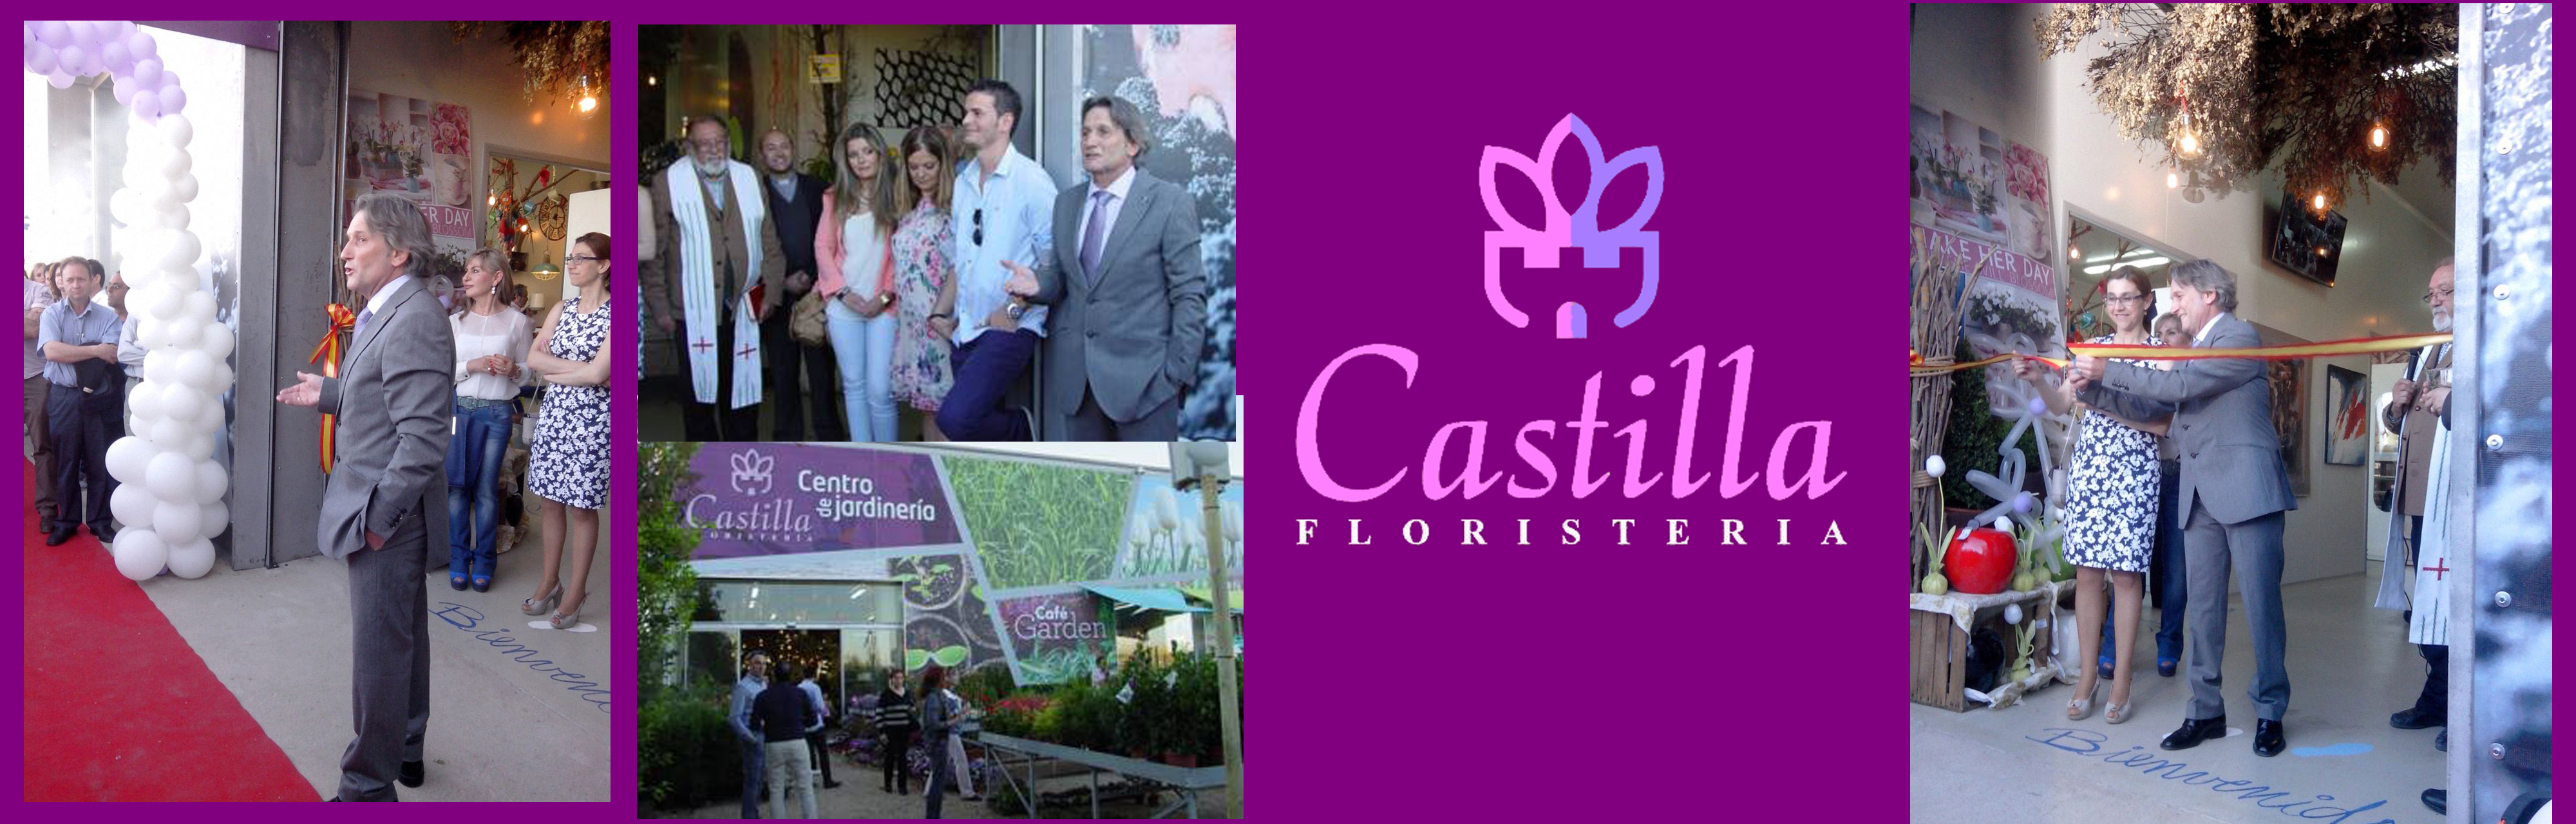 Floristería Castilla en Aranda de Duero 25-05-2015